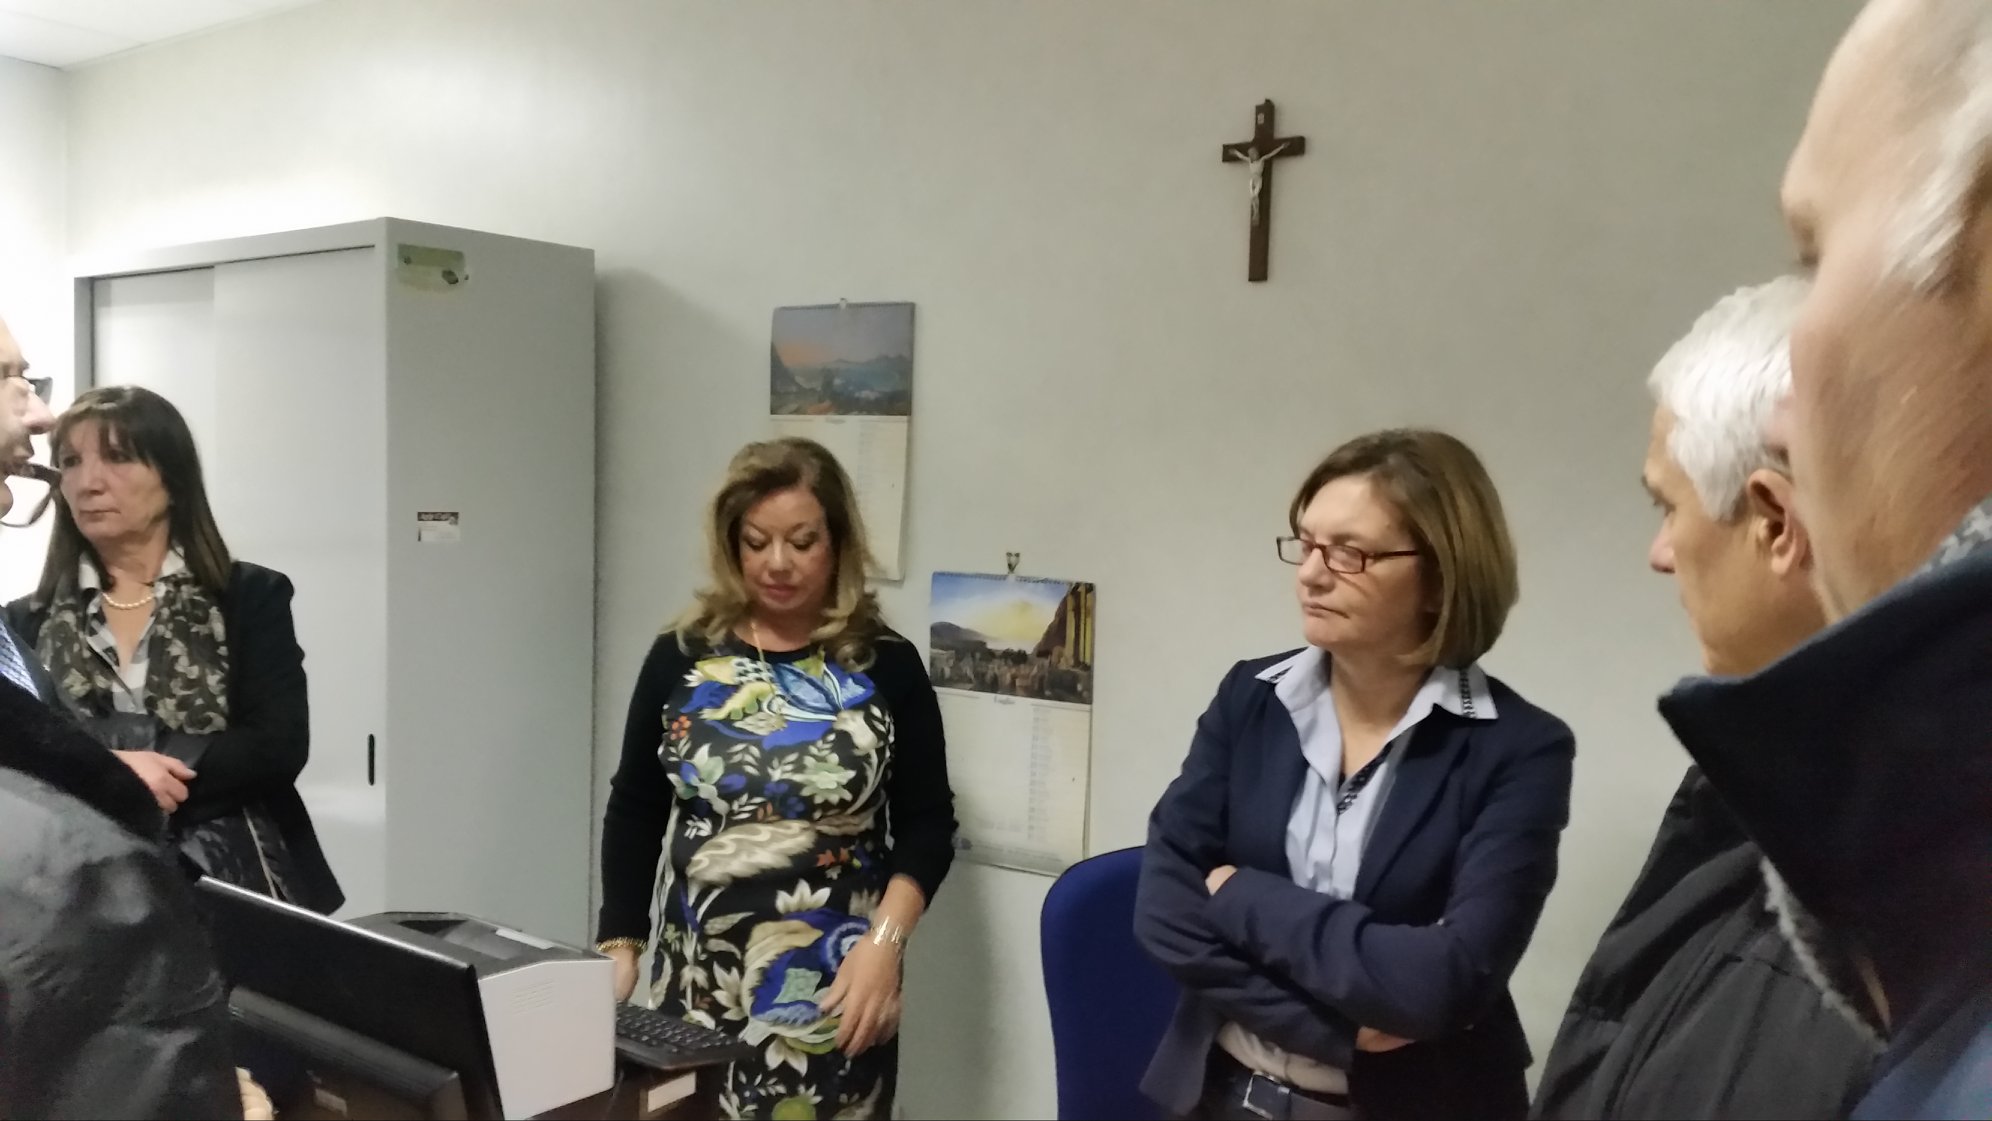  La Beneduce (FI) in visita al San Leonardo con il commissario straordinario Costantini